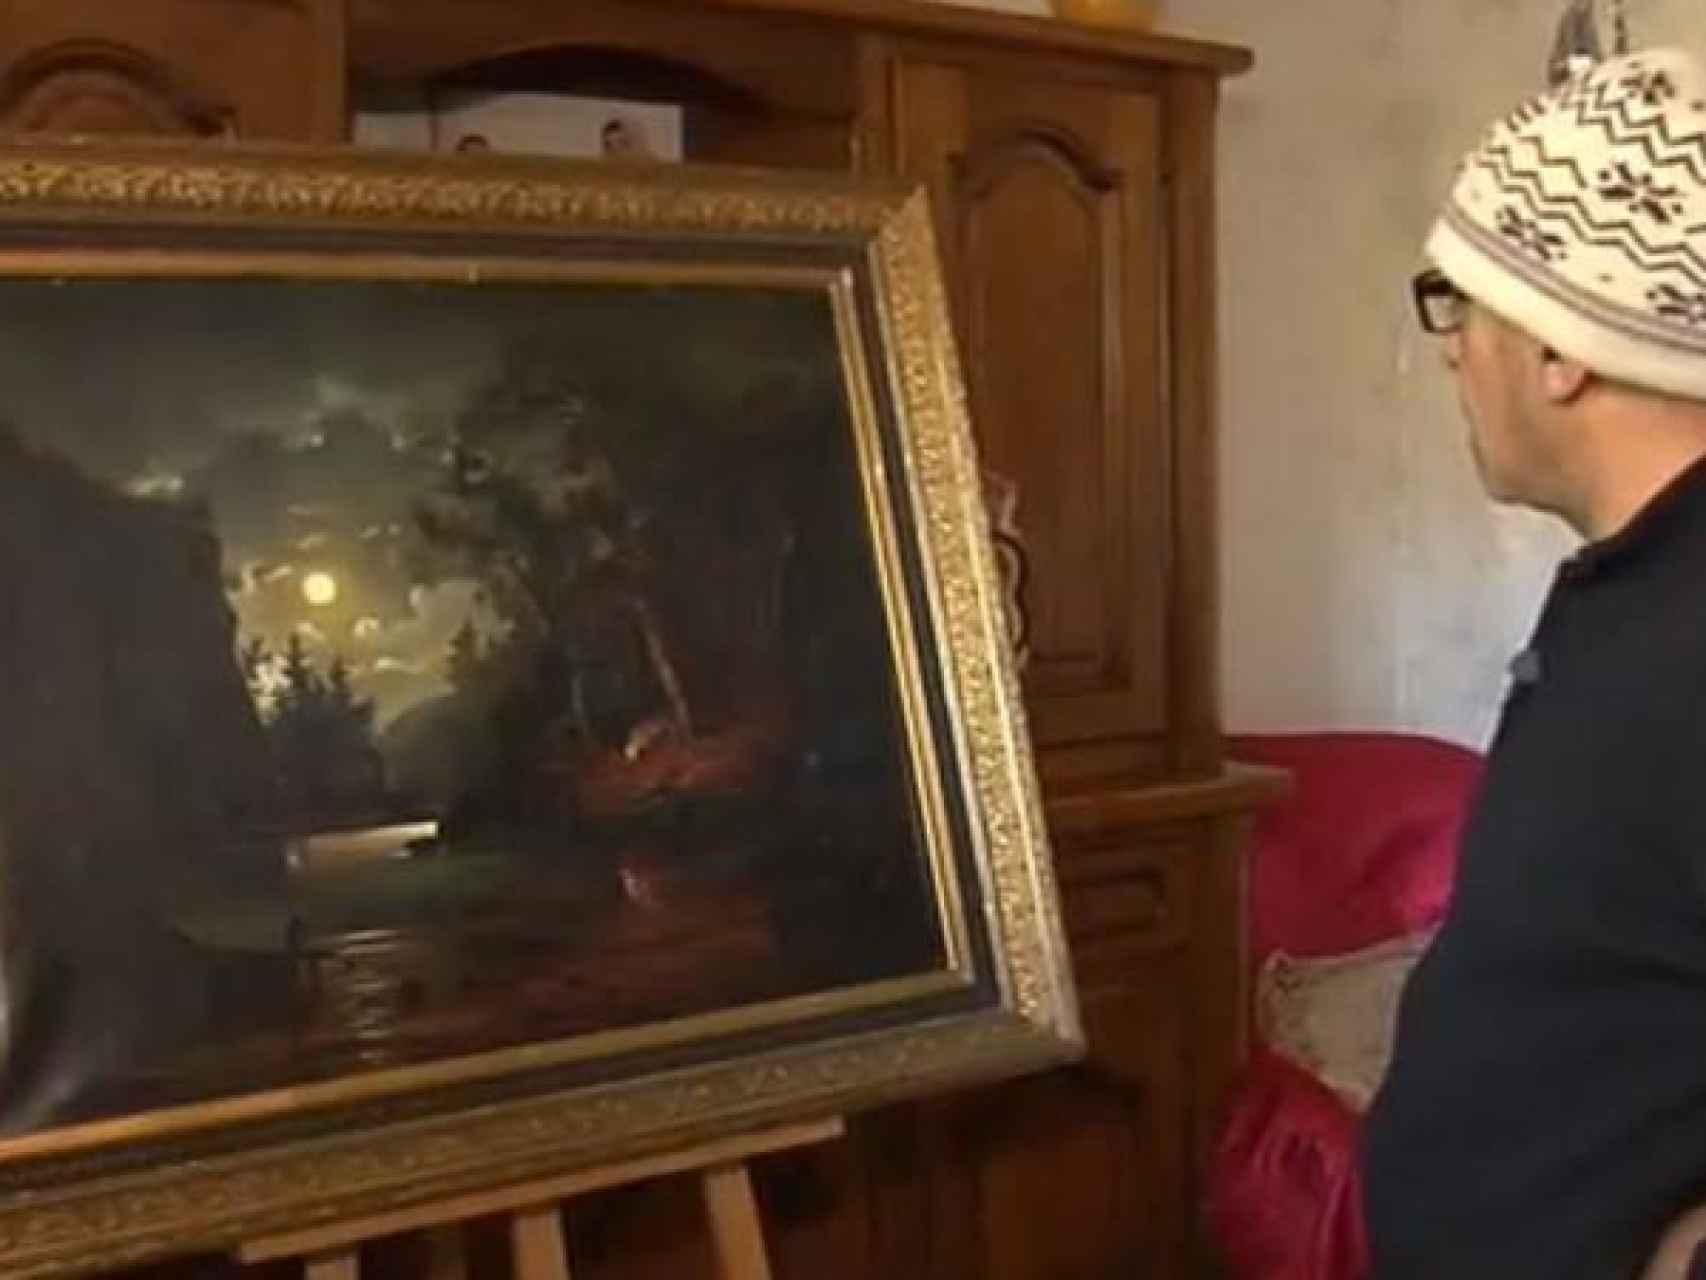 Ahmed Ziani observa el cuadro que espera ser atribuido al pintor impresionista.